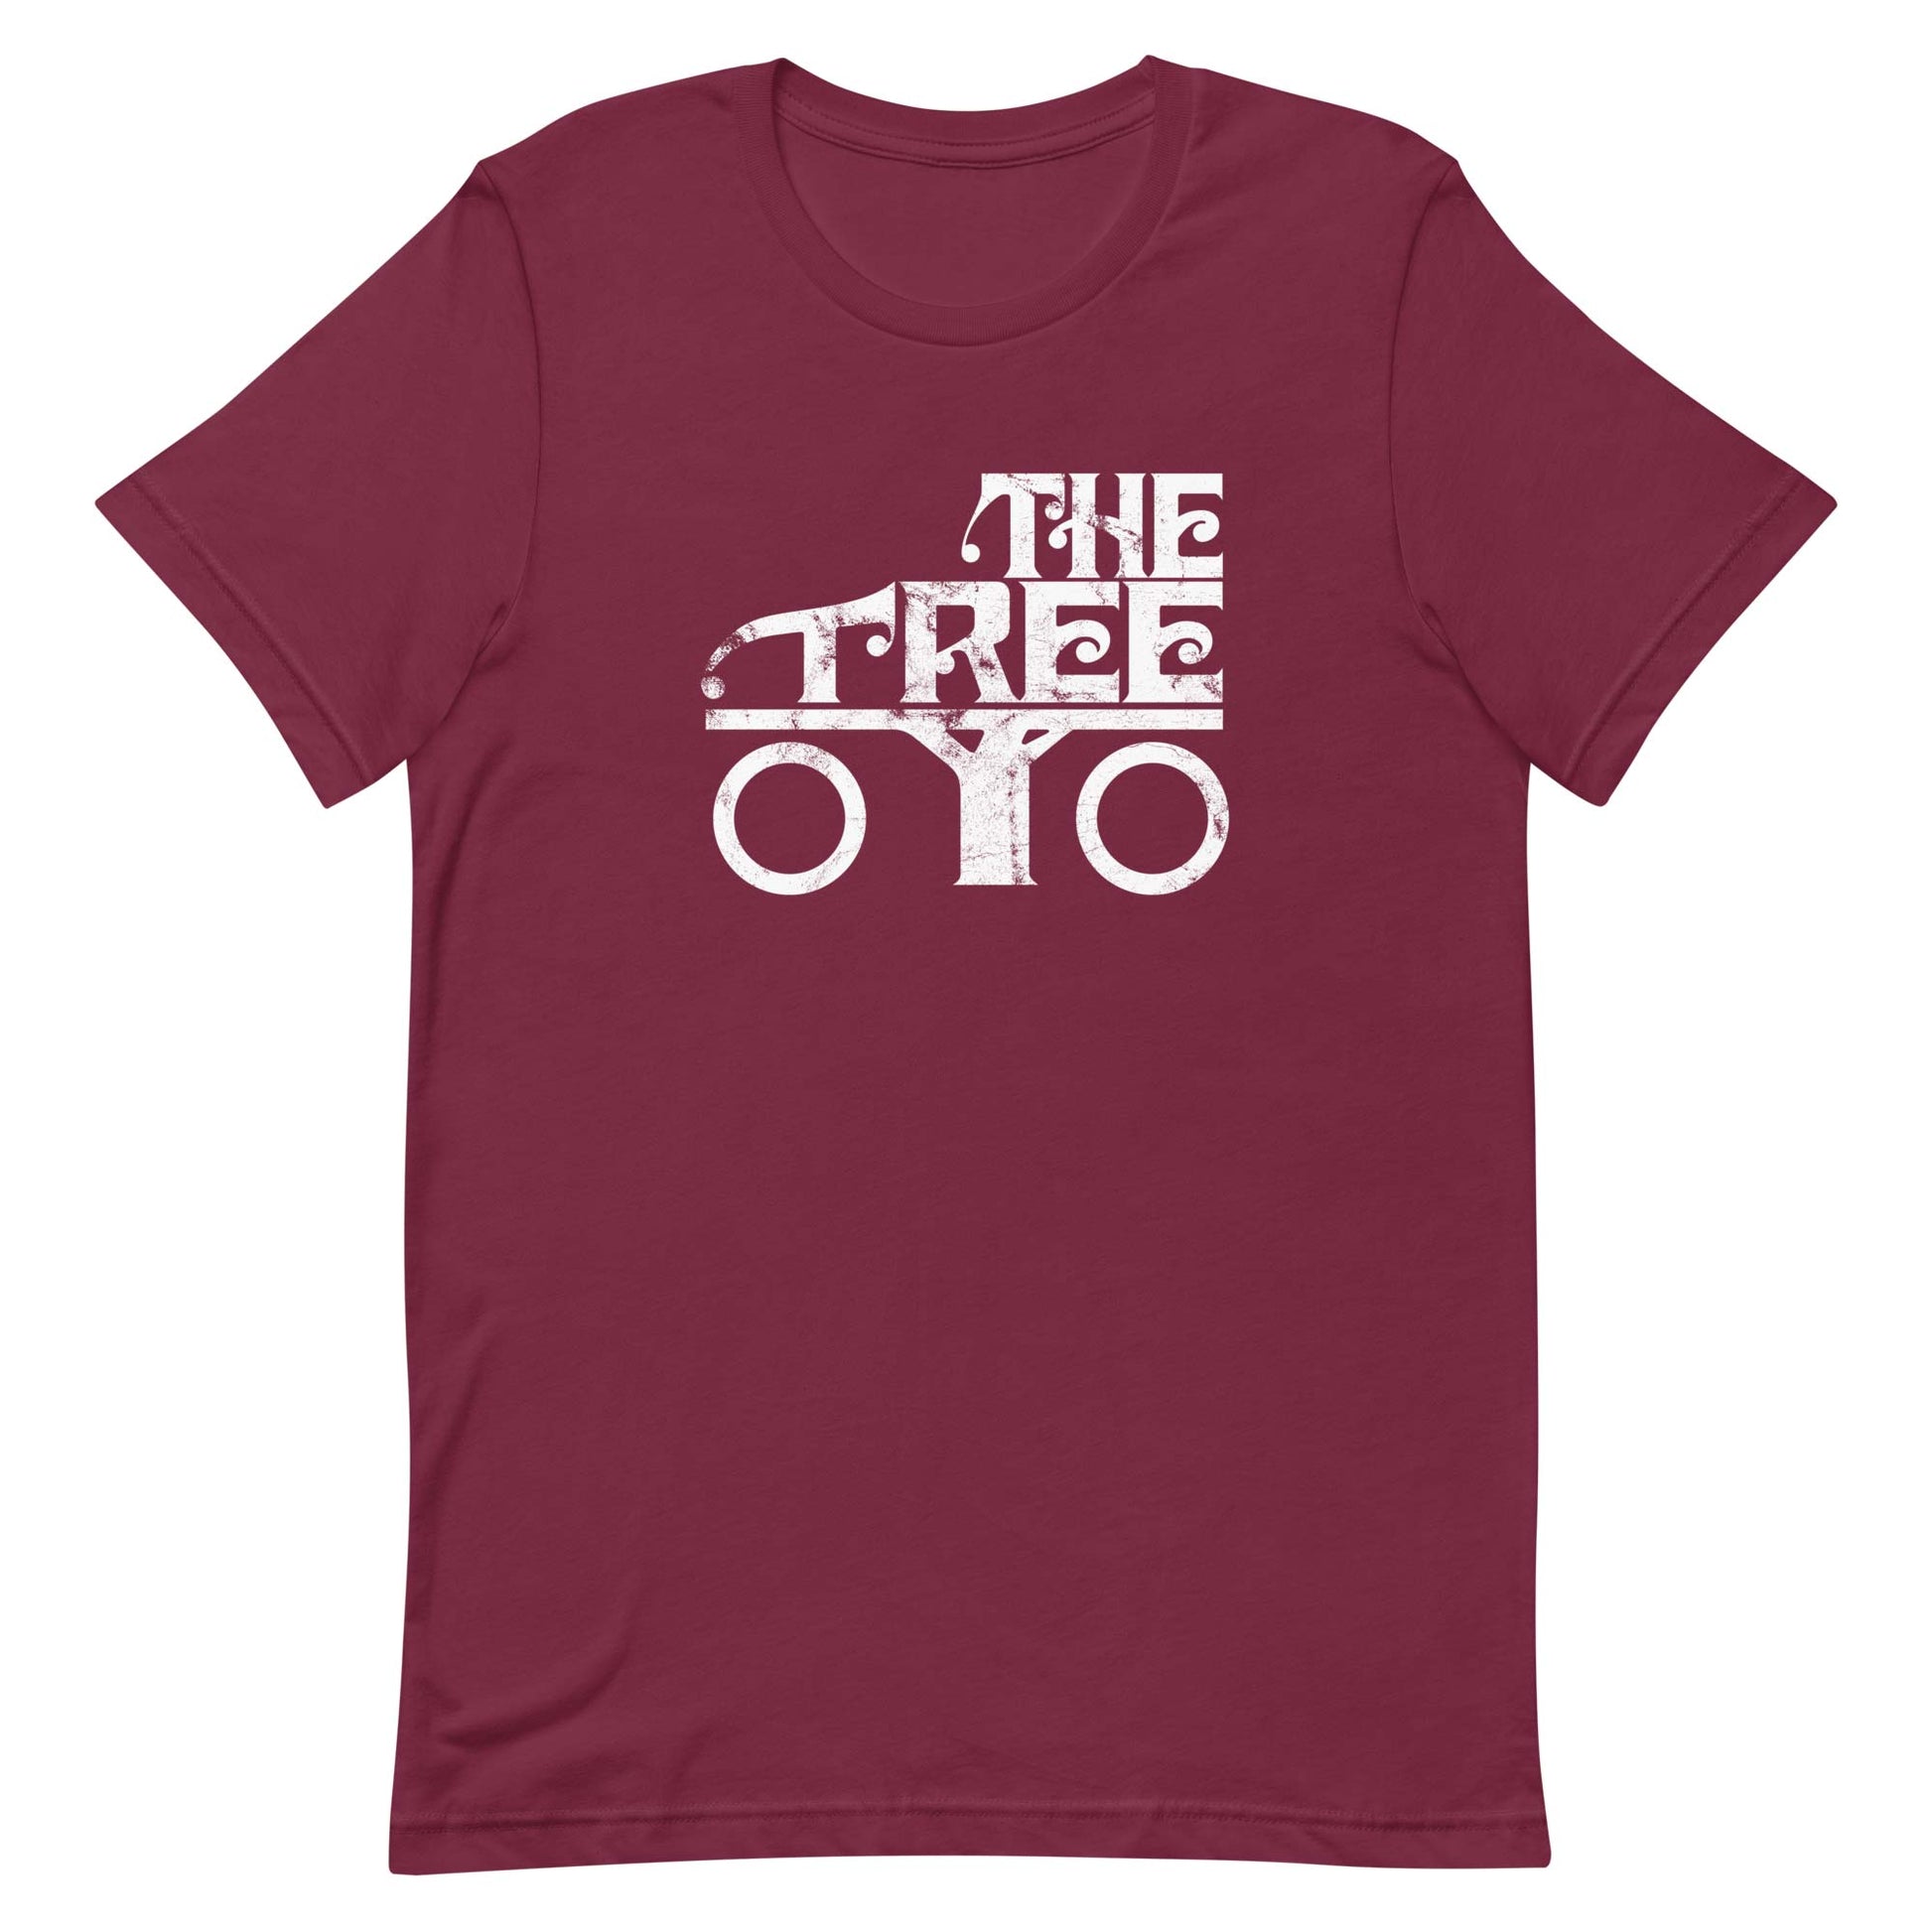 The Tree Roller Skating Rockford Unisex Retro T-shirt